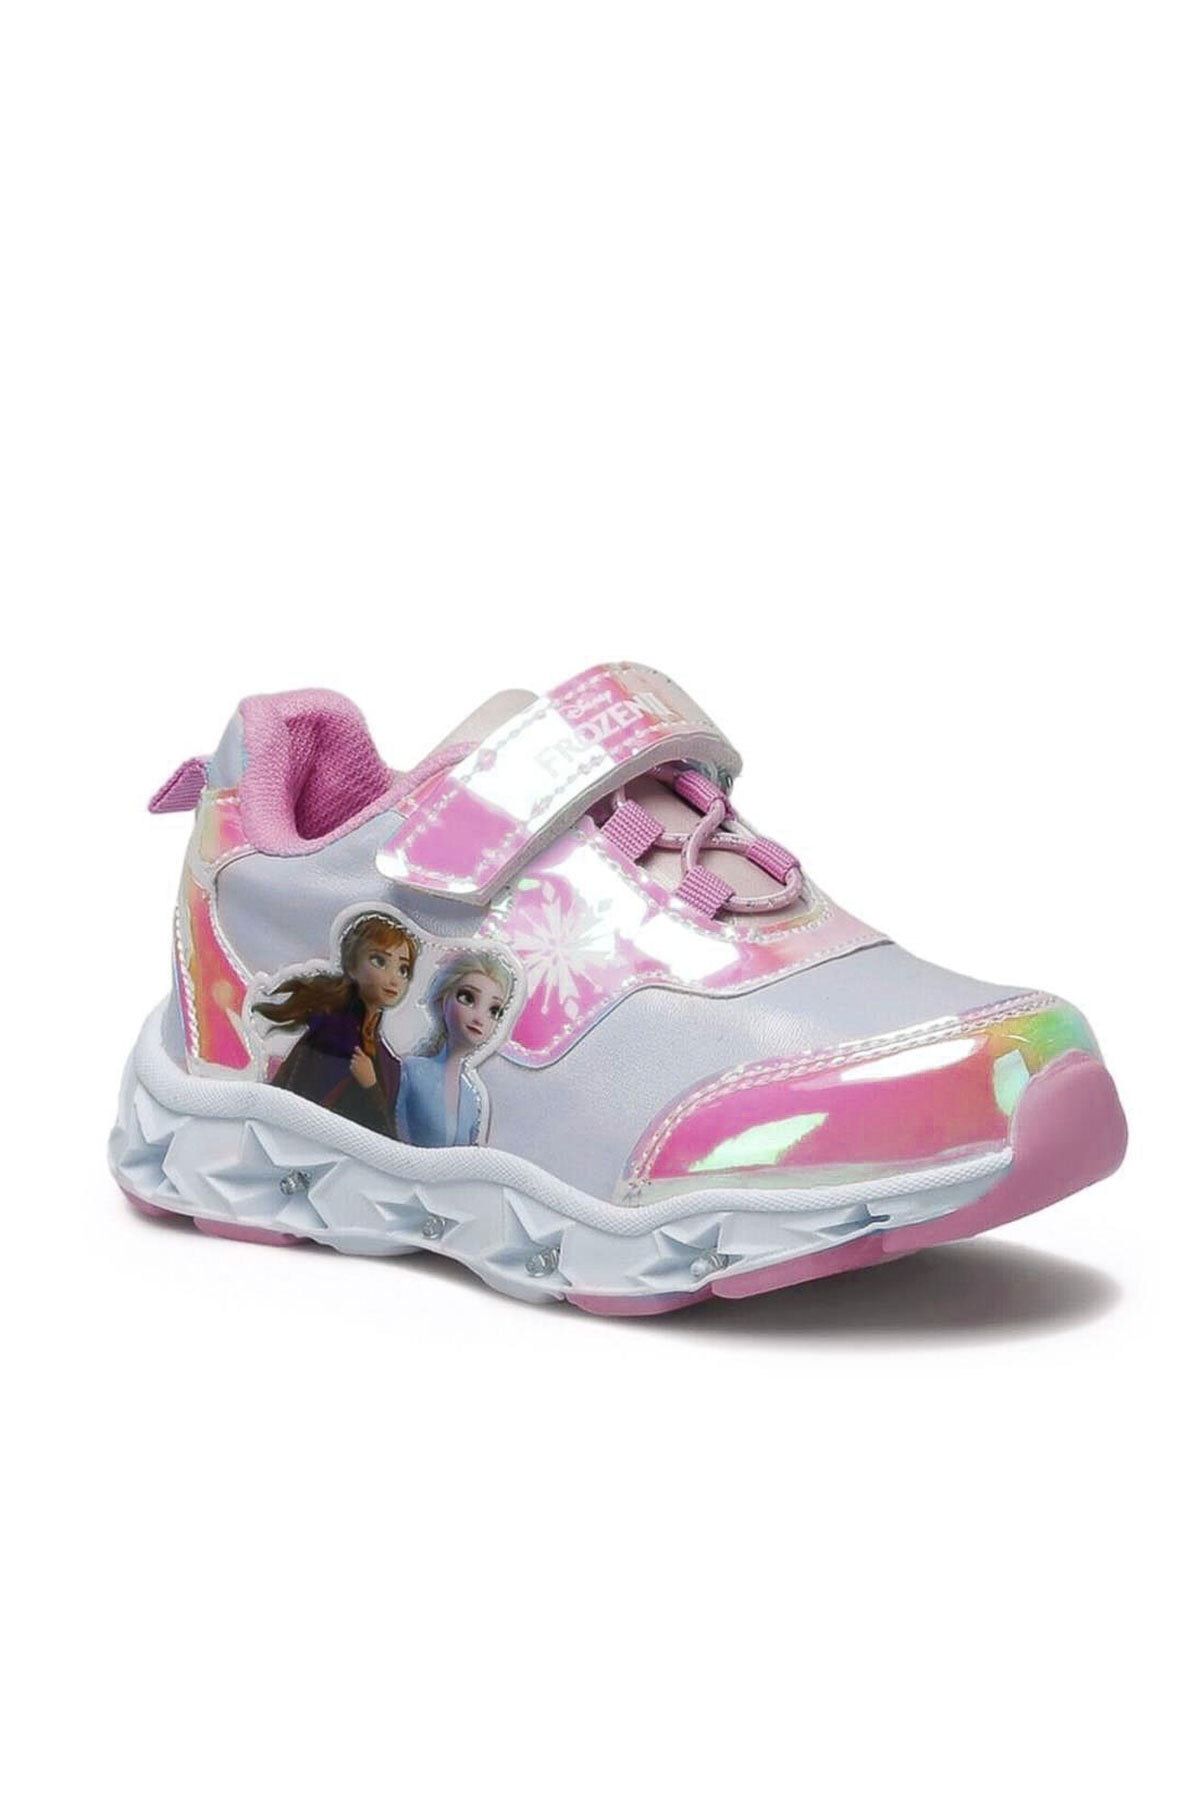 Frozen Orjinal Kız Çocuk Işıklı Pembe Parlak Sim Kaplama Sneaker Spor Ayakkabı Girl Child With Light Shoes